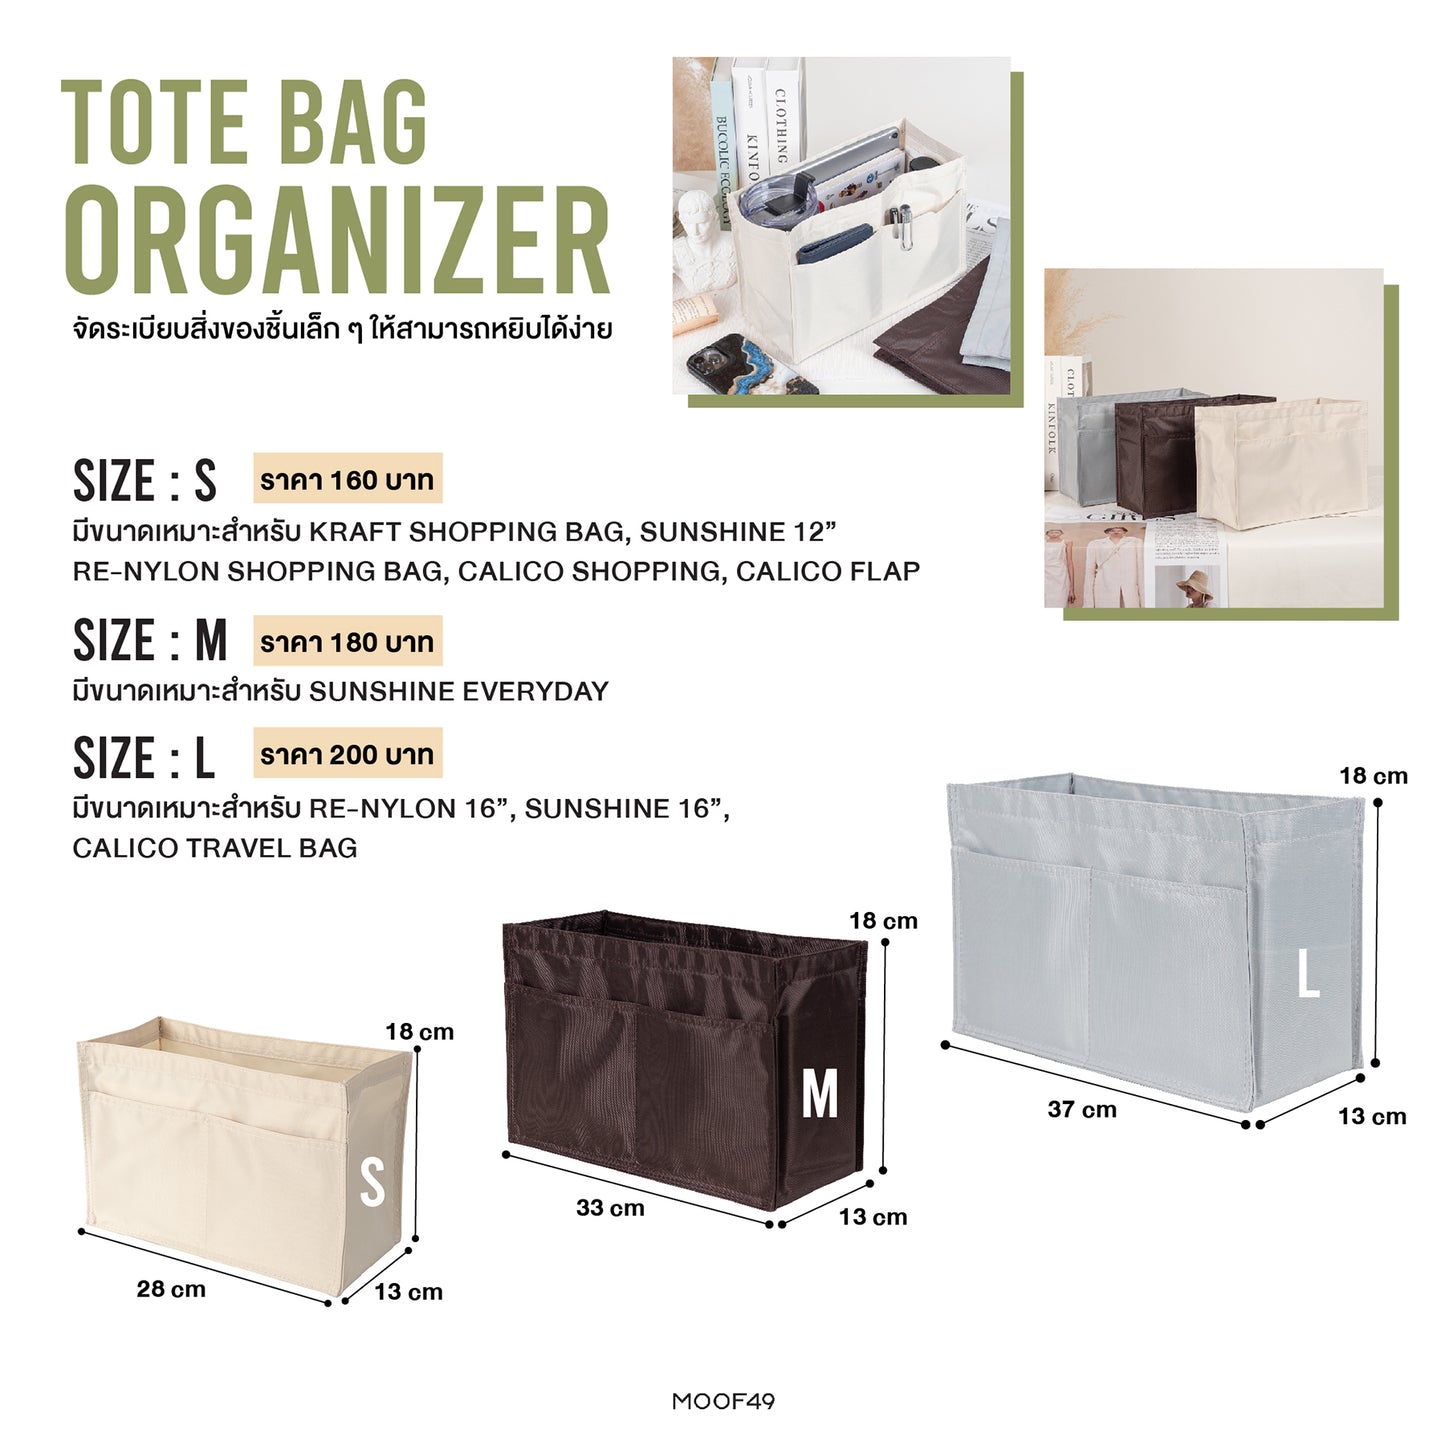 Tote Bag Organizer